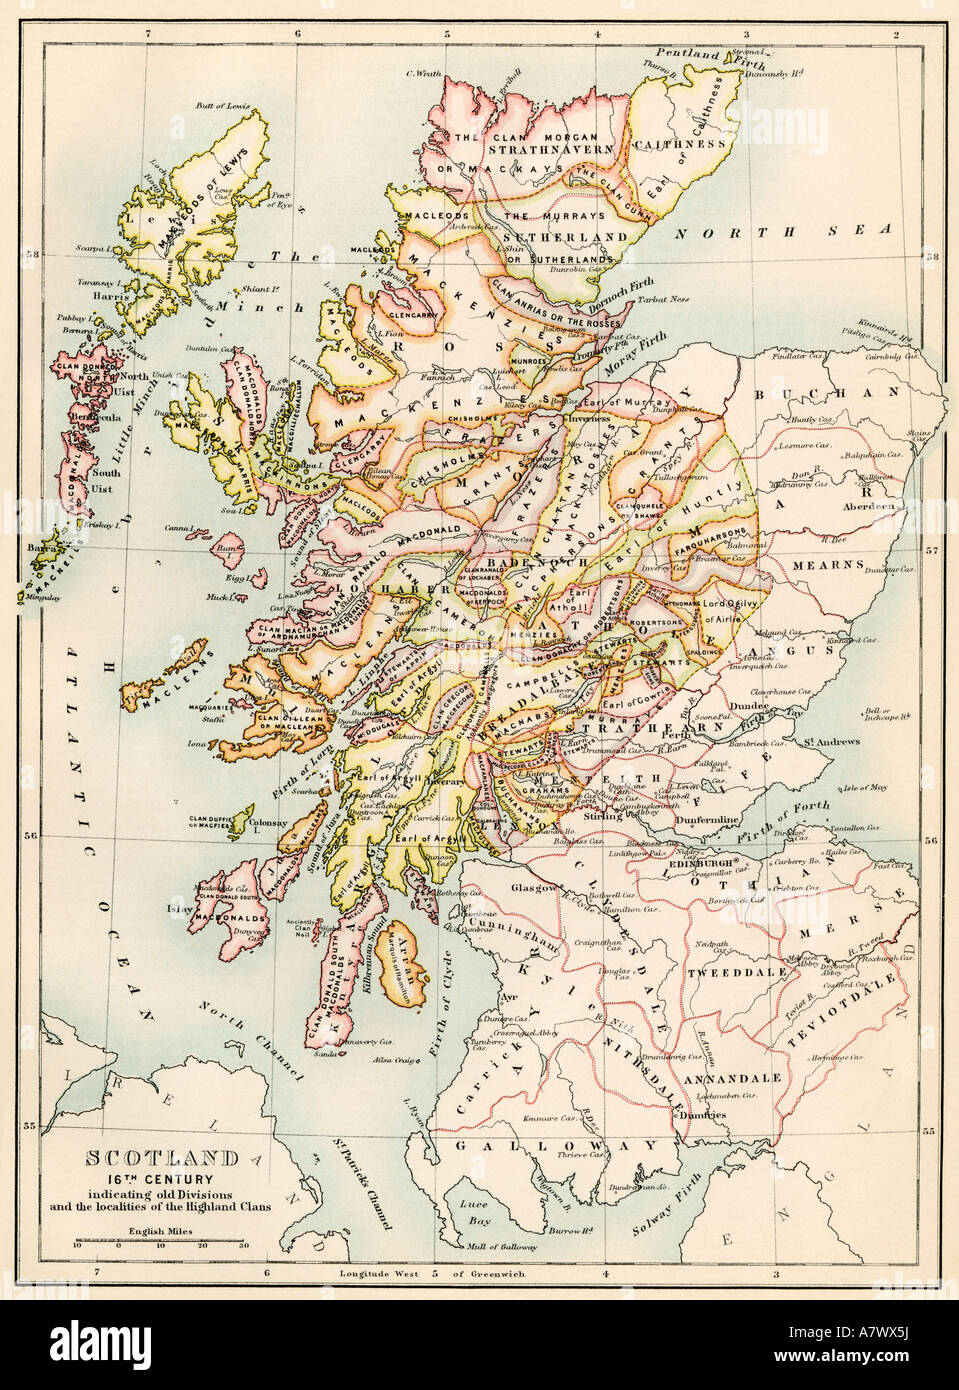 La carte de l'Écosse dans les années 1520 montrant les territoires des clans des Highlands. Lithographie couleur Banque D'Images